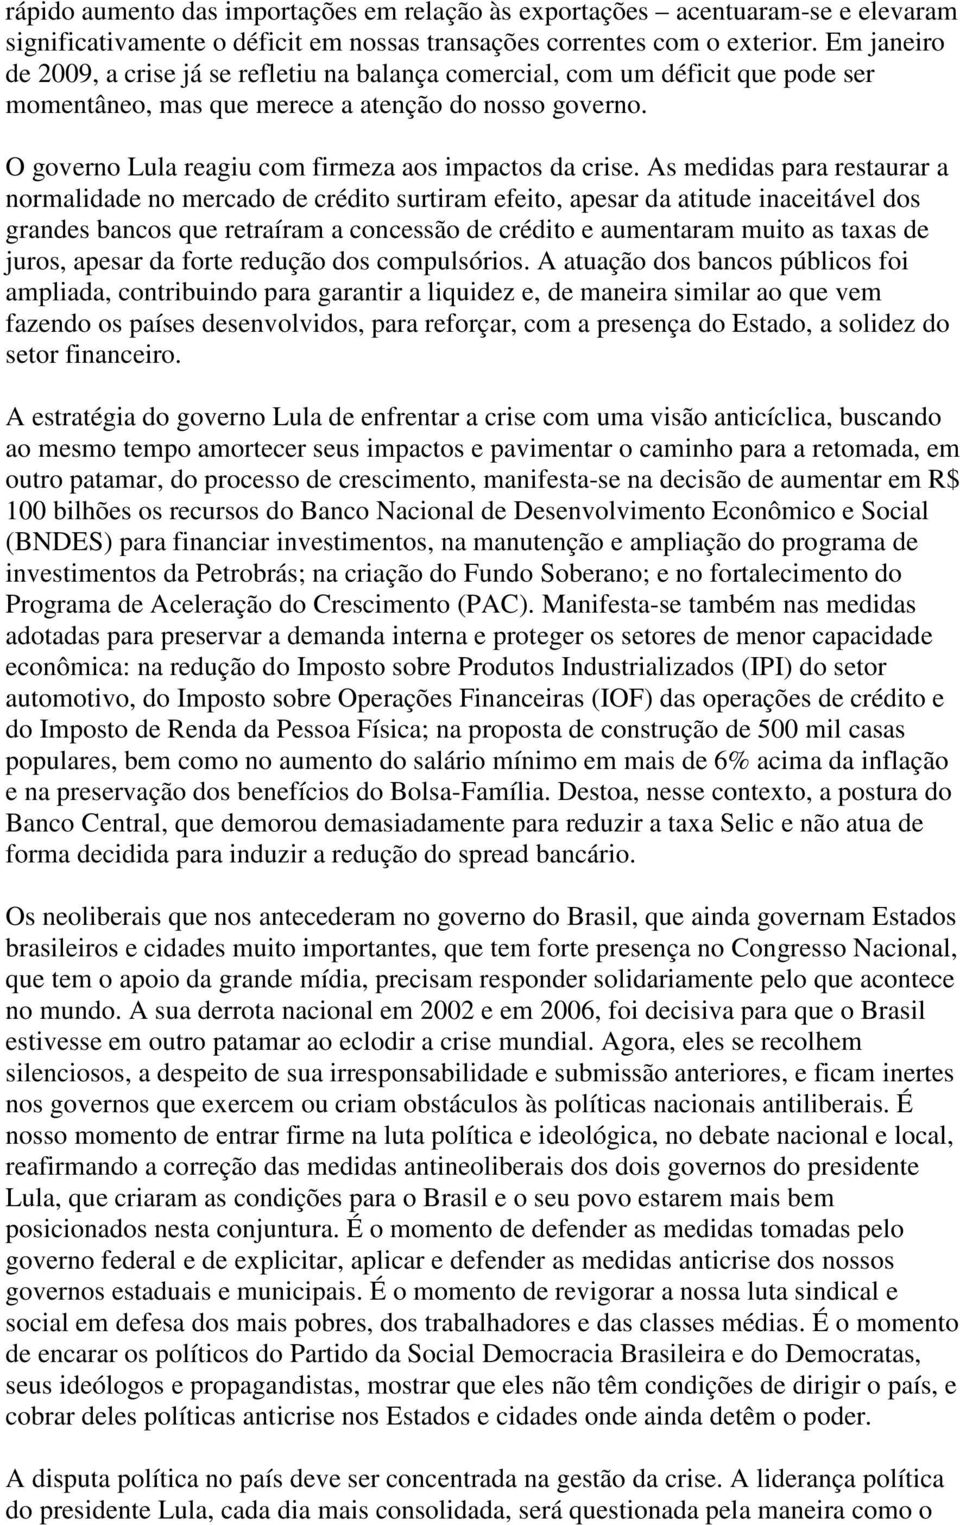 O governo Lula reagiu com firmeza aos impactos da crise.